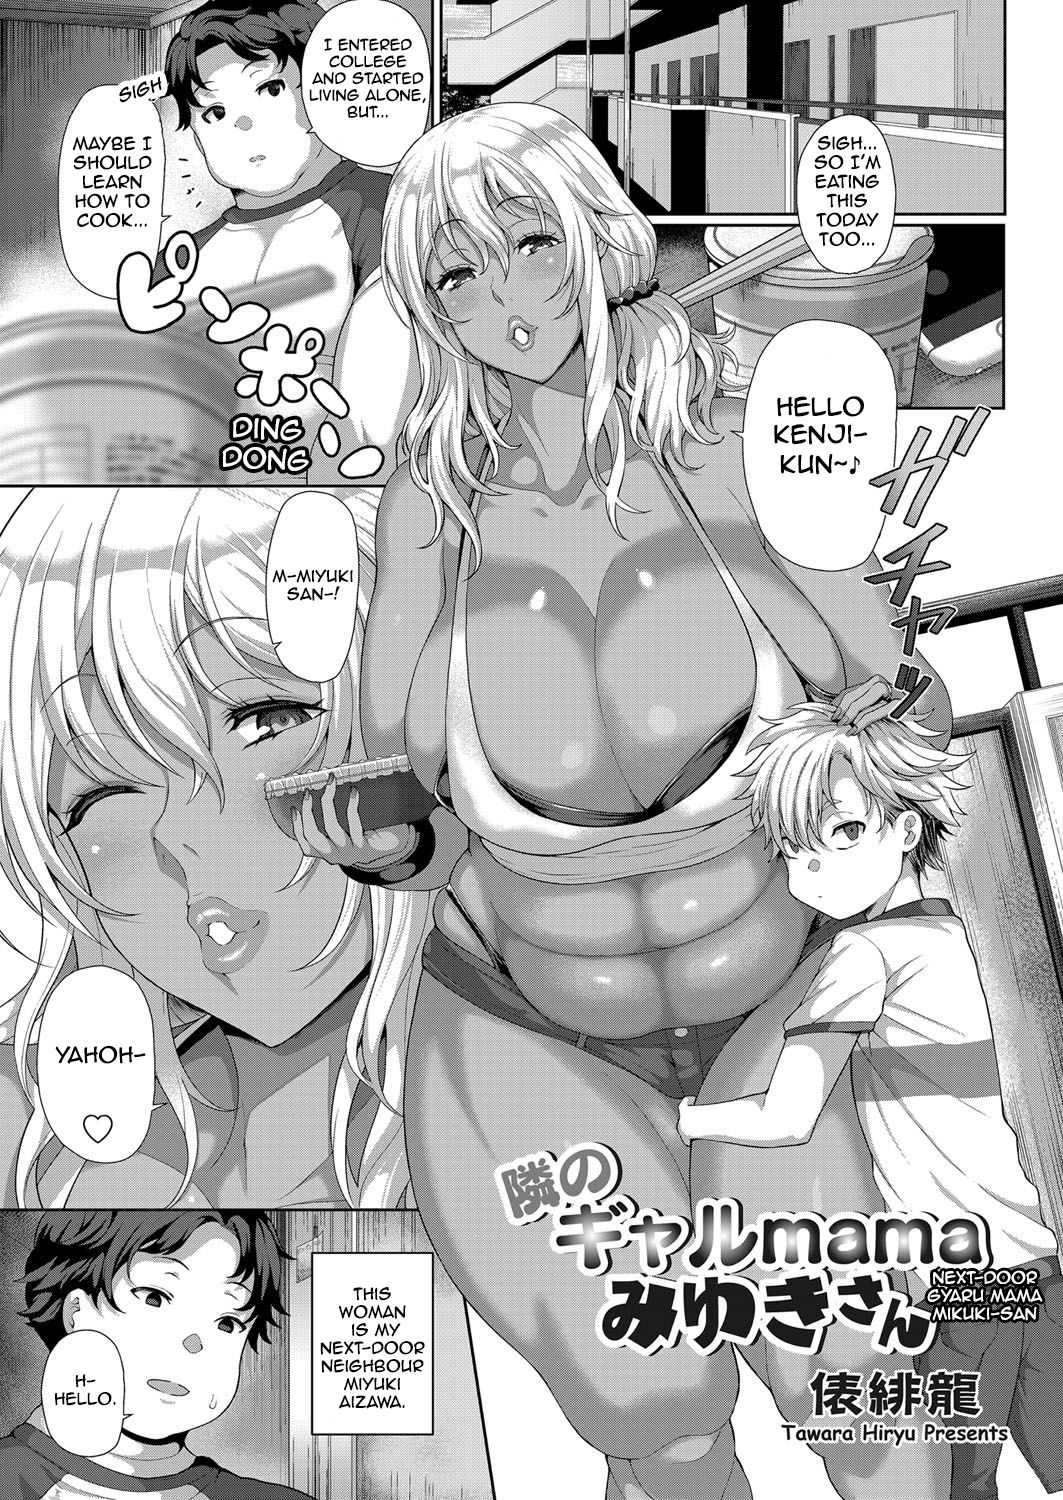 Anime Next Door Neighbor Porn - Next-Door Gyaru Mama Miyuki-san [Tawara Hiryuu] - Chapter 1 - Free Hentai  Manga, Adult Webtoon, Doujinshi Manga and Mature Comics